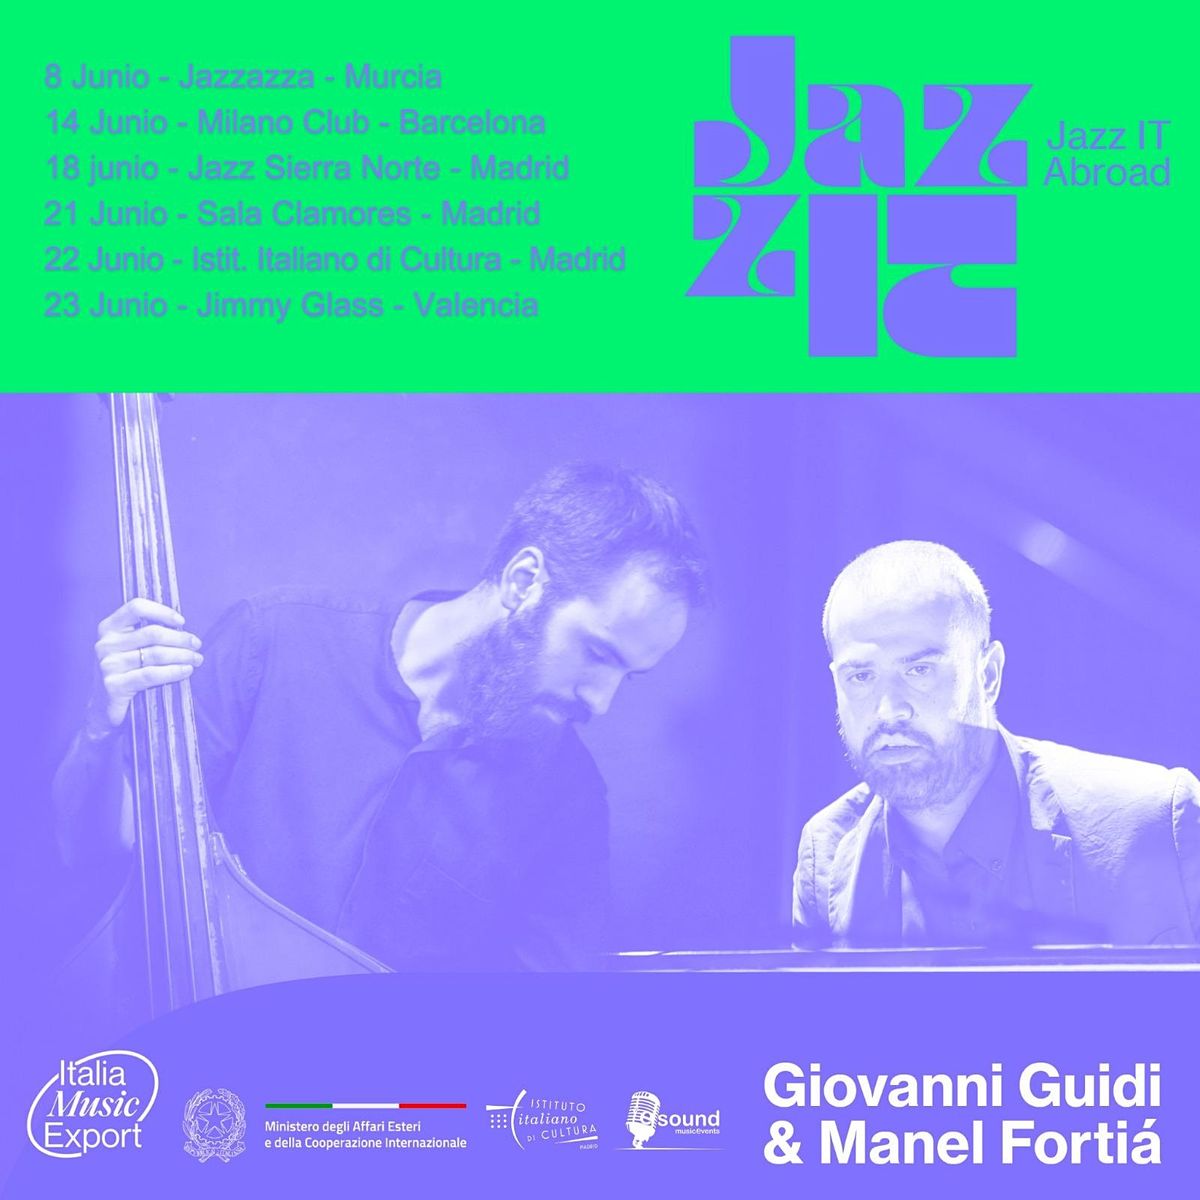 Giovanni Guidi & Manel Forti\u00e0 duo - Milano Jazz Club - 14 de Junio